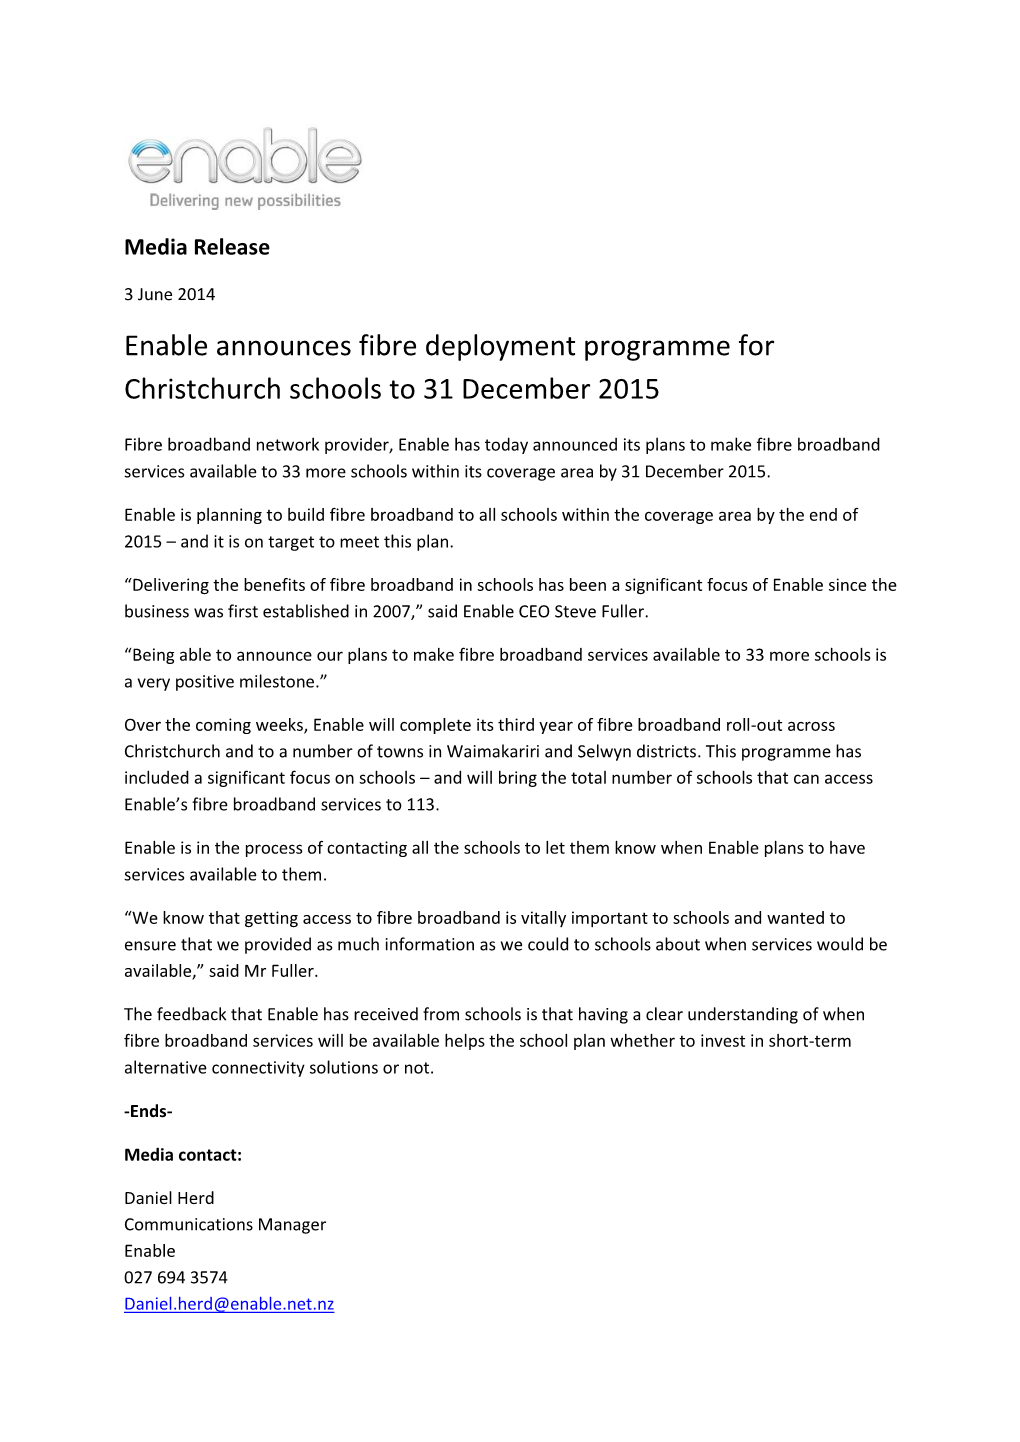 Enable Announces Fibre Deployment Programme for Christchurch Schools to 31 December 2015